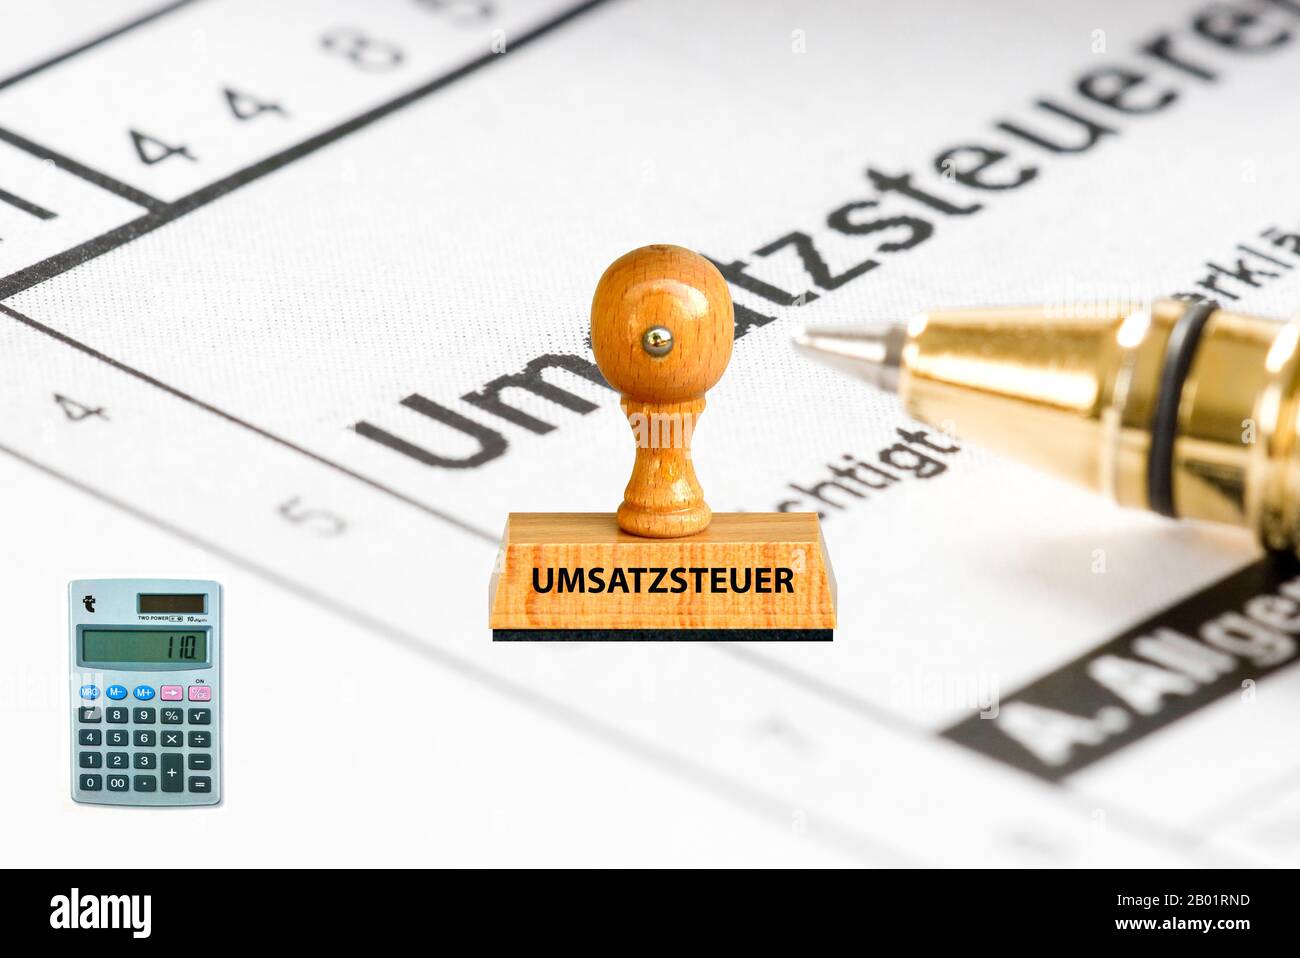 Cachet Umsatzsteuer, ajouté des taxes, application et calcul en arrière-plan, Allemagne Banque D'Images